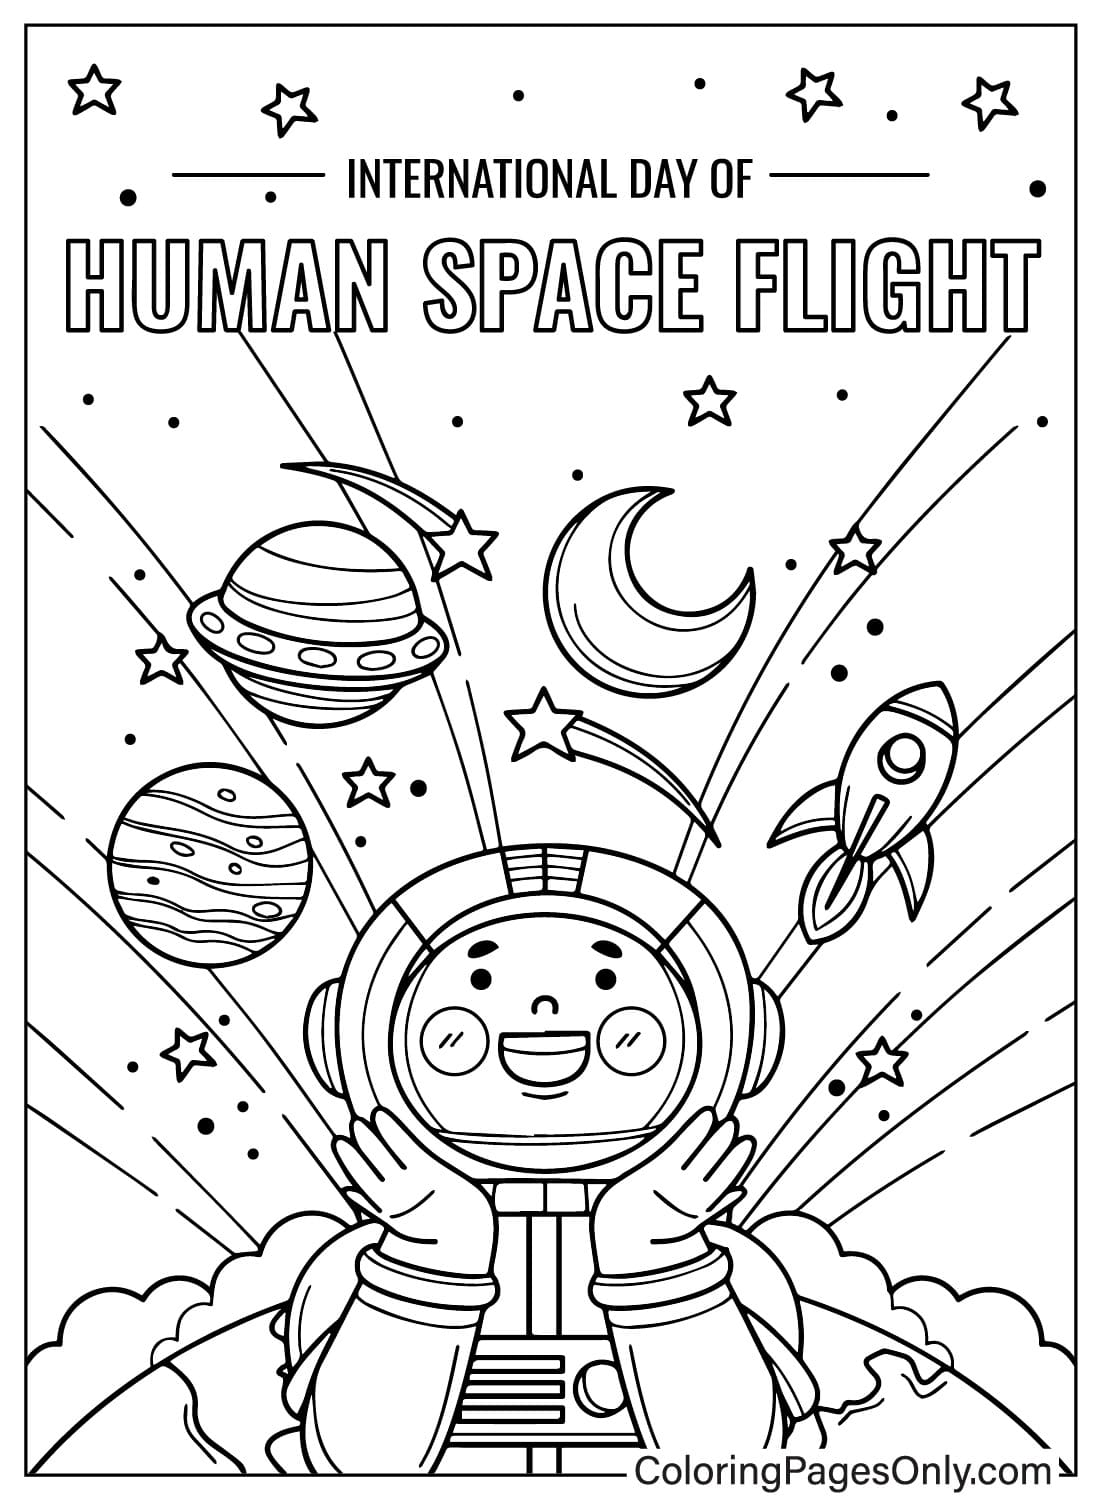 Imagem colorida do Dia Internacional do Voo Espacial Humano do Dia Internacional do Voo Espacial Humano